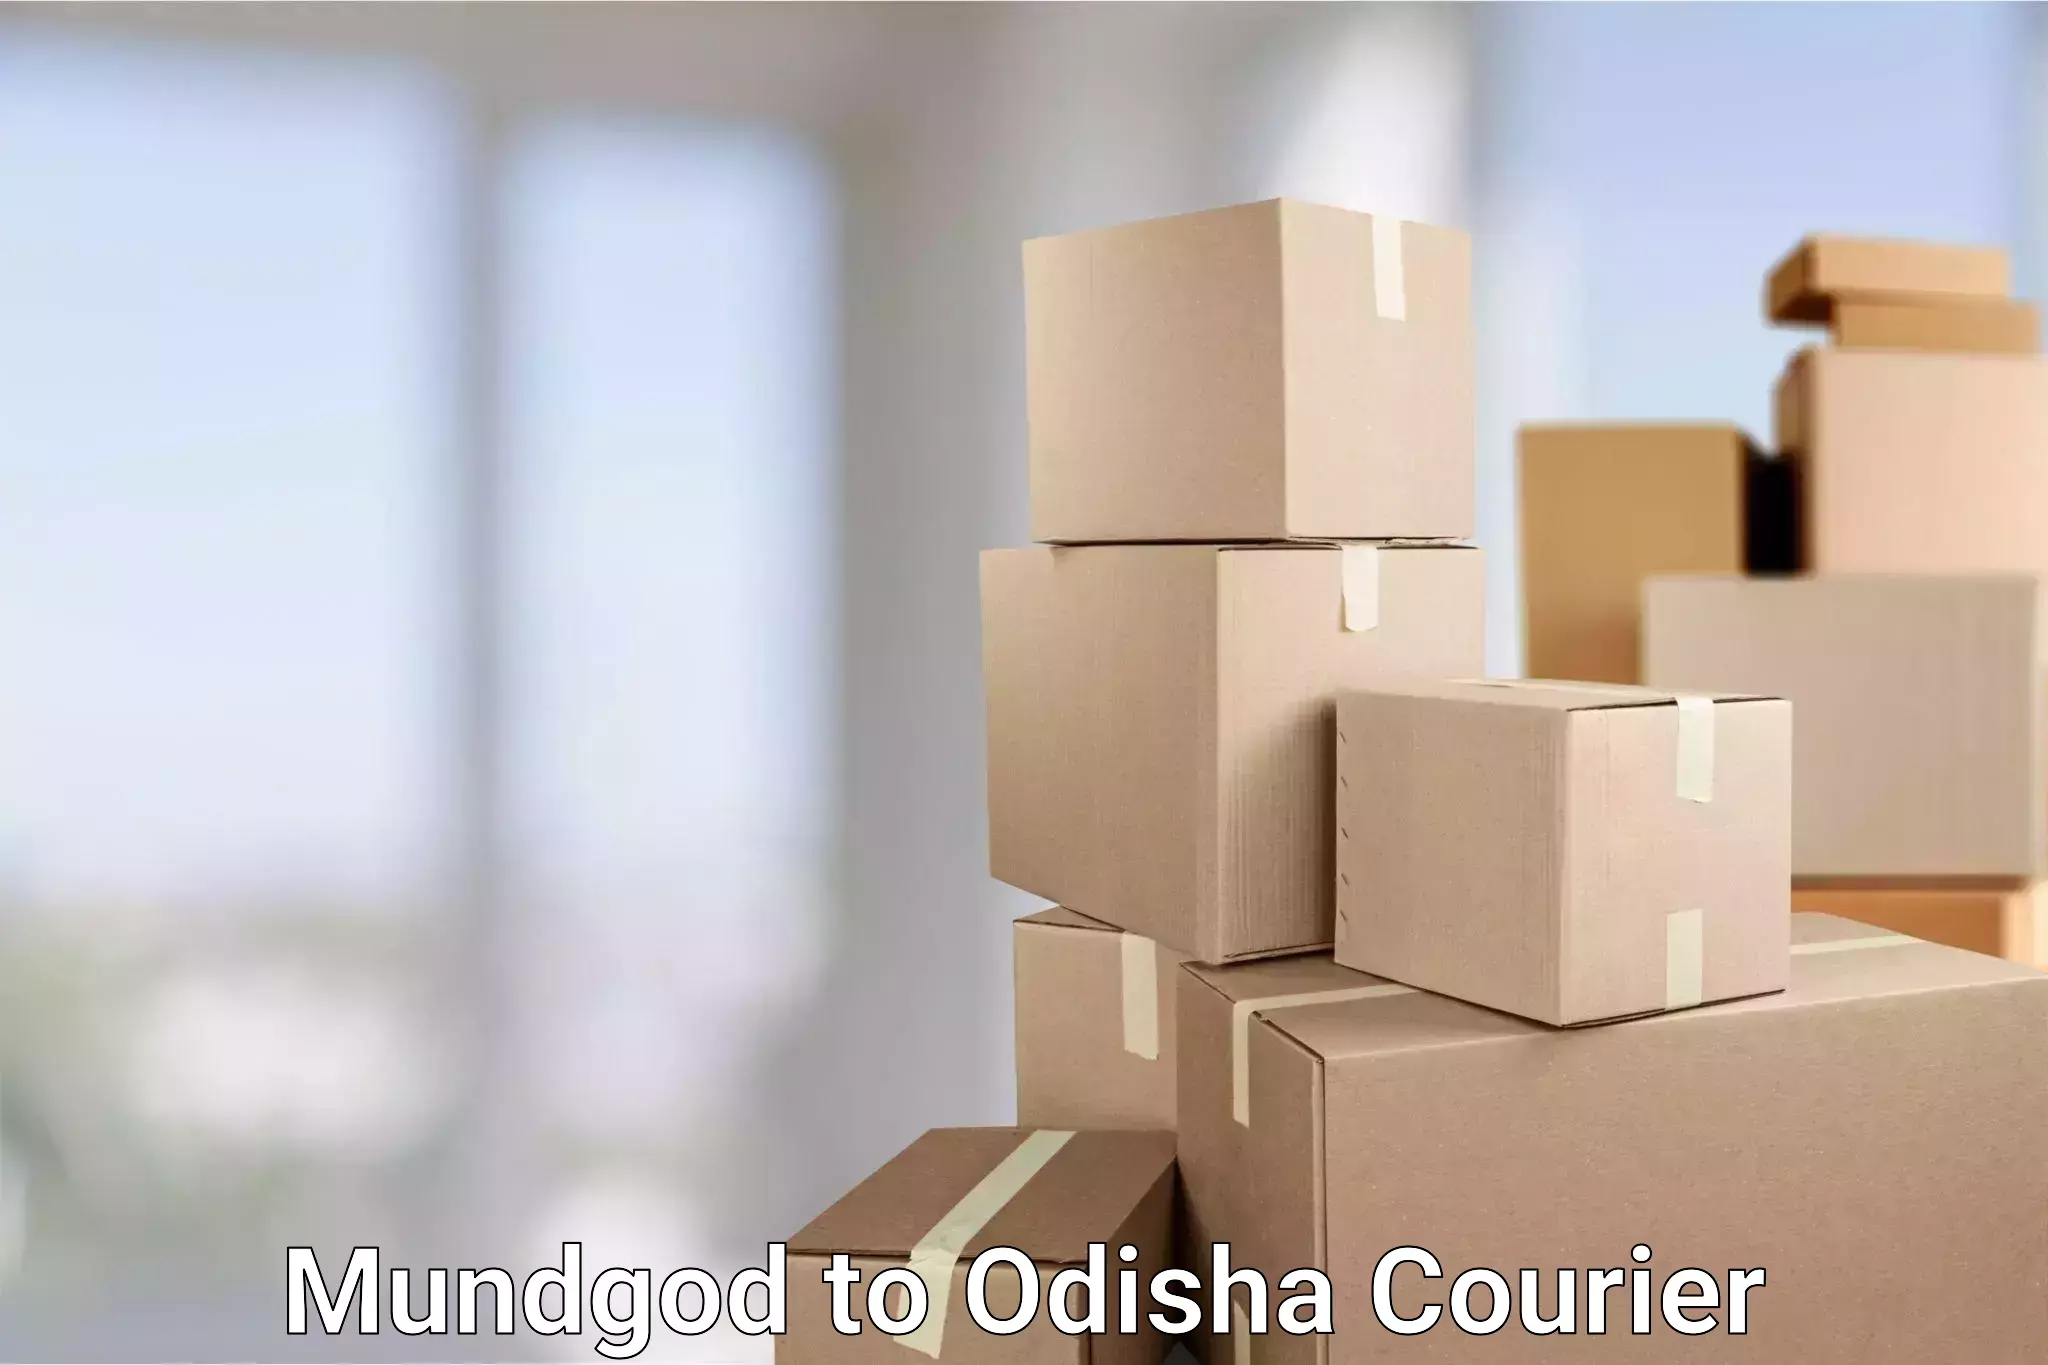 Express package handling Mundgod to Udala